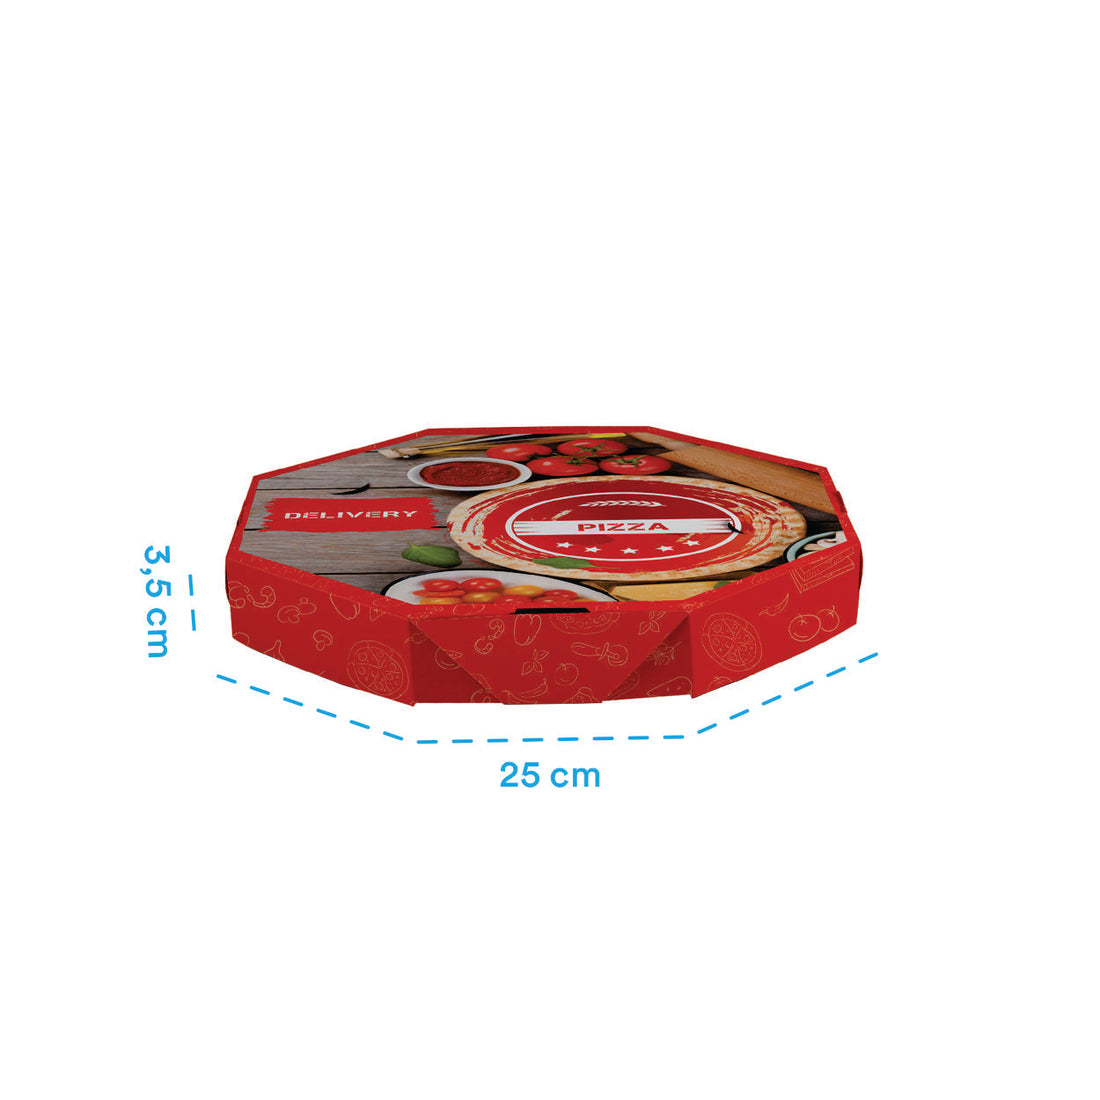 Caixa de Pizza Italianinha com Fundo Branco Octagonal 25cm